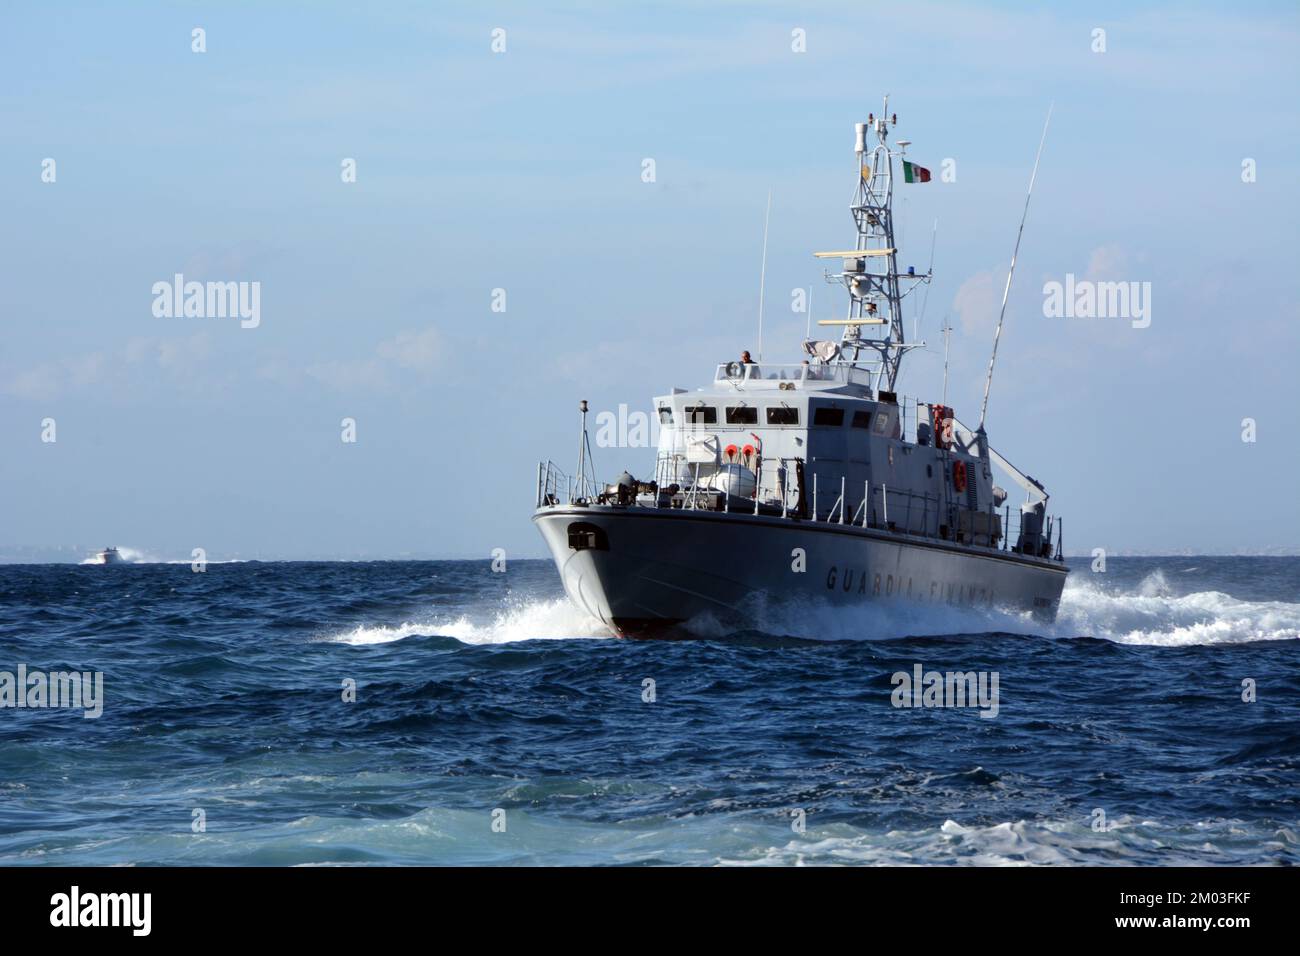 And Italian Coast Guard (Guardia Costiera) navy ship patrolling the Mediterranean waters of the Amalfi Coast, near Sorrento, Campania, Italy. Stock Photo